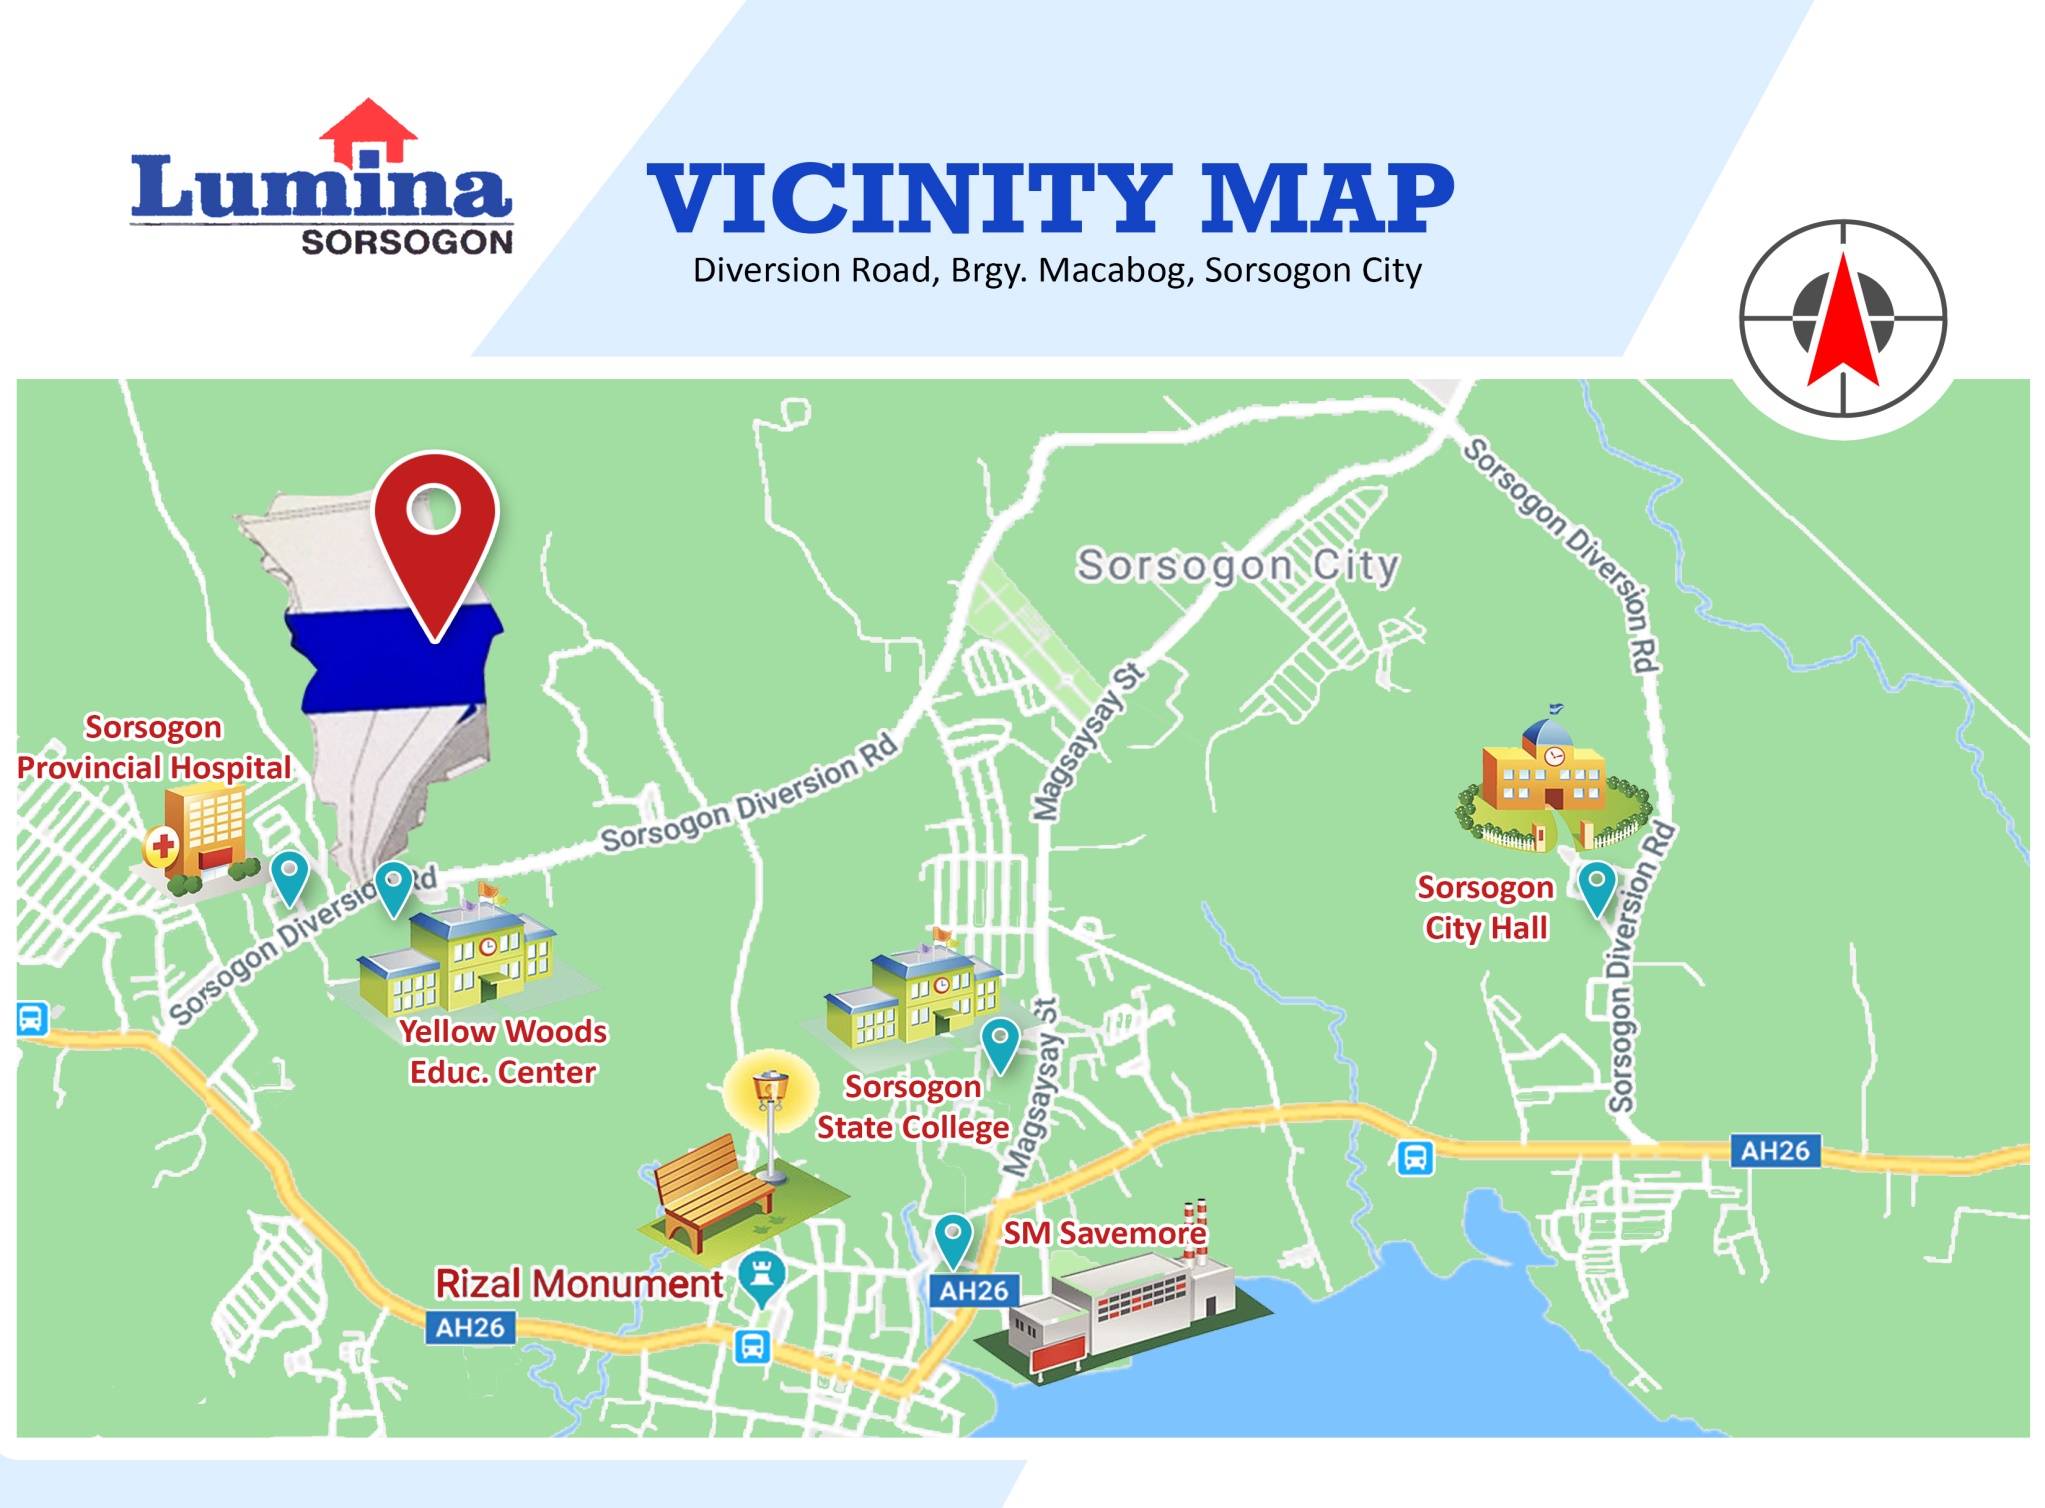 Vicinity-Map-1638774921.jpeg